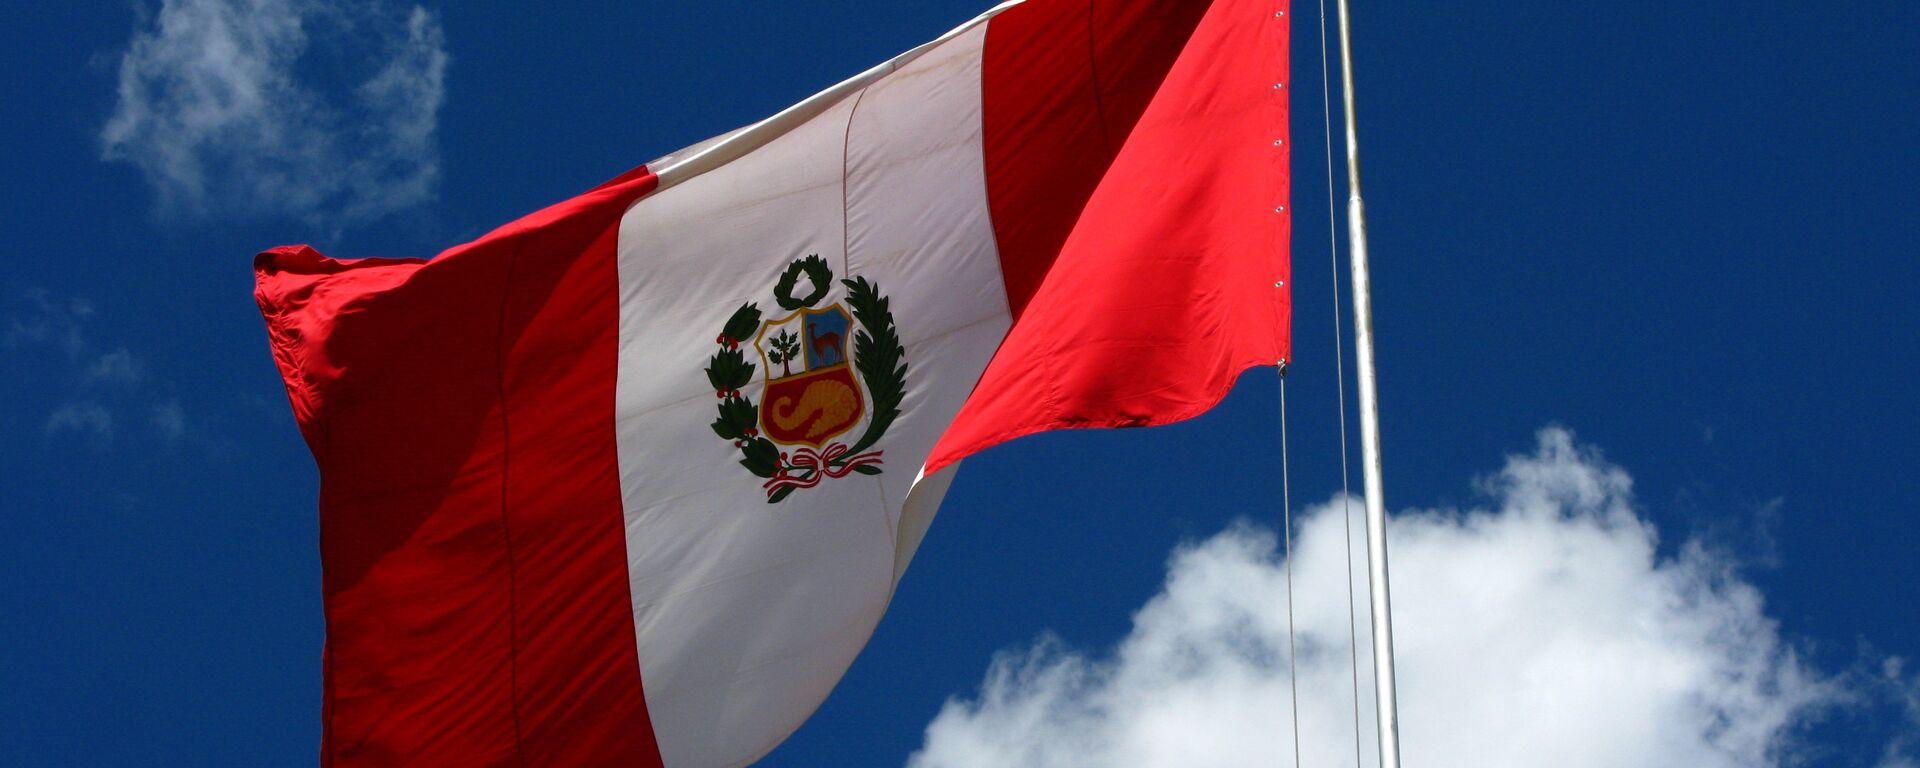 Bandera del Perú - Sputnik Mundo, 1920, 11.05.2021